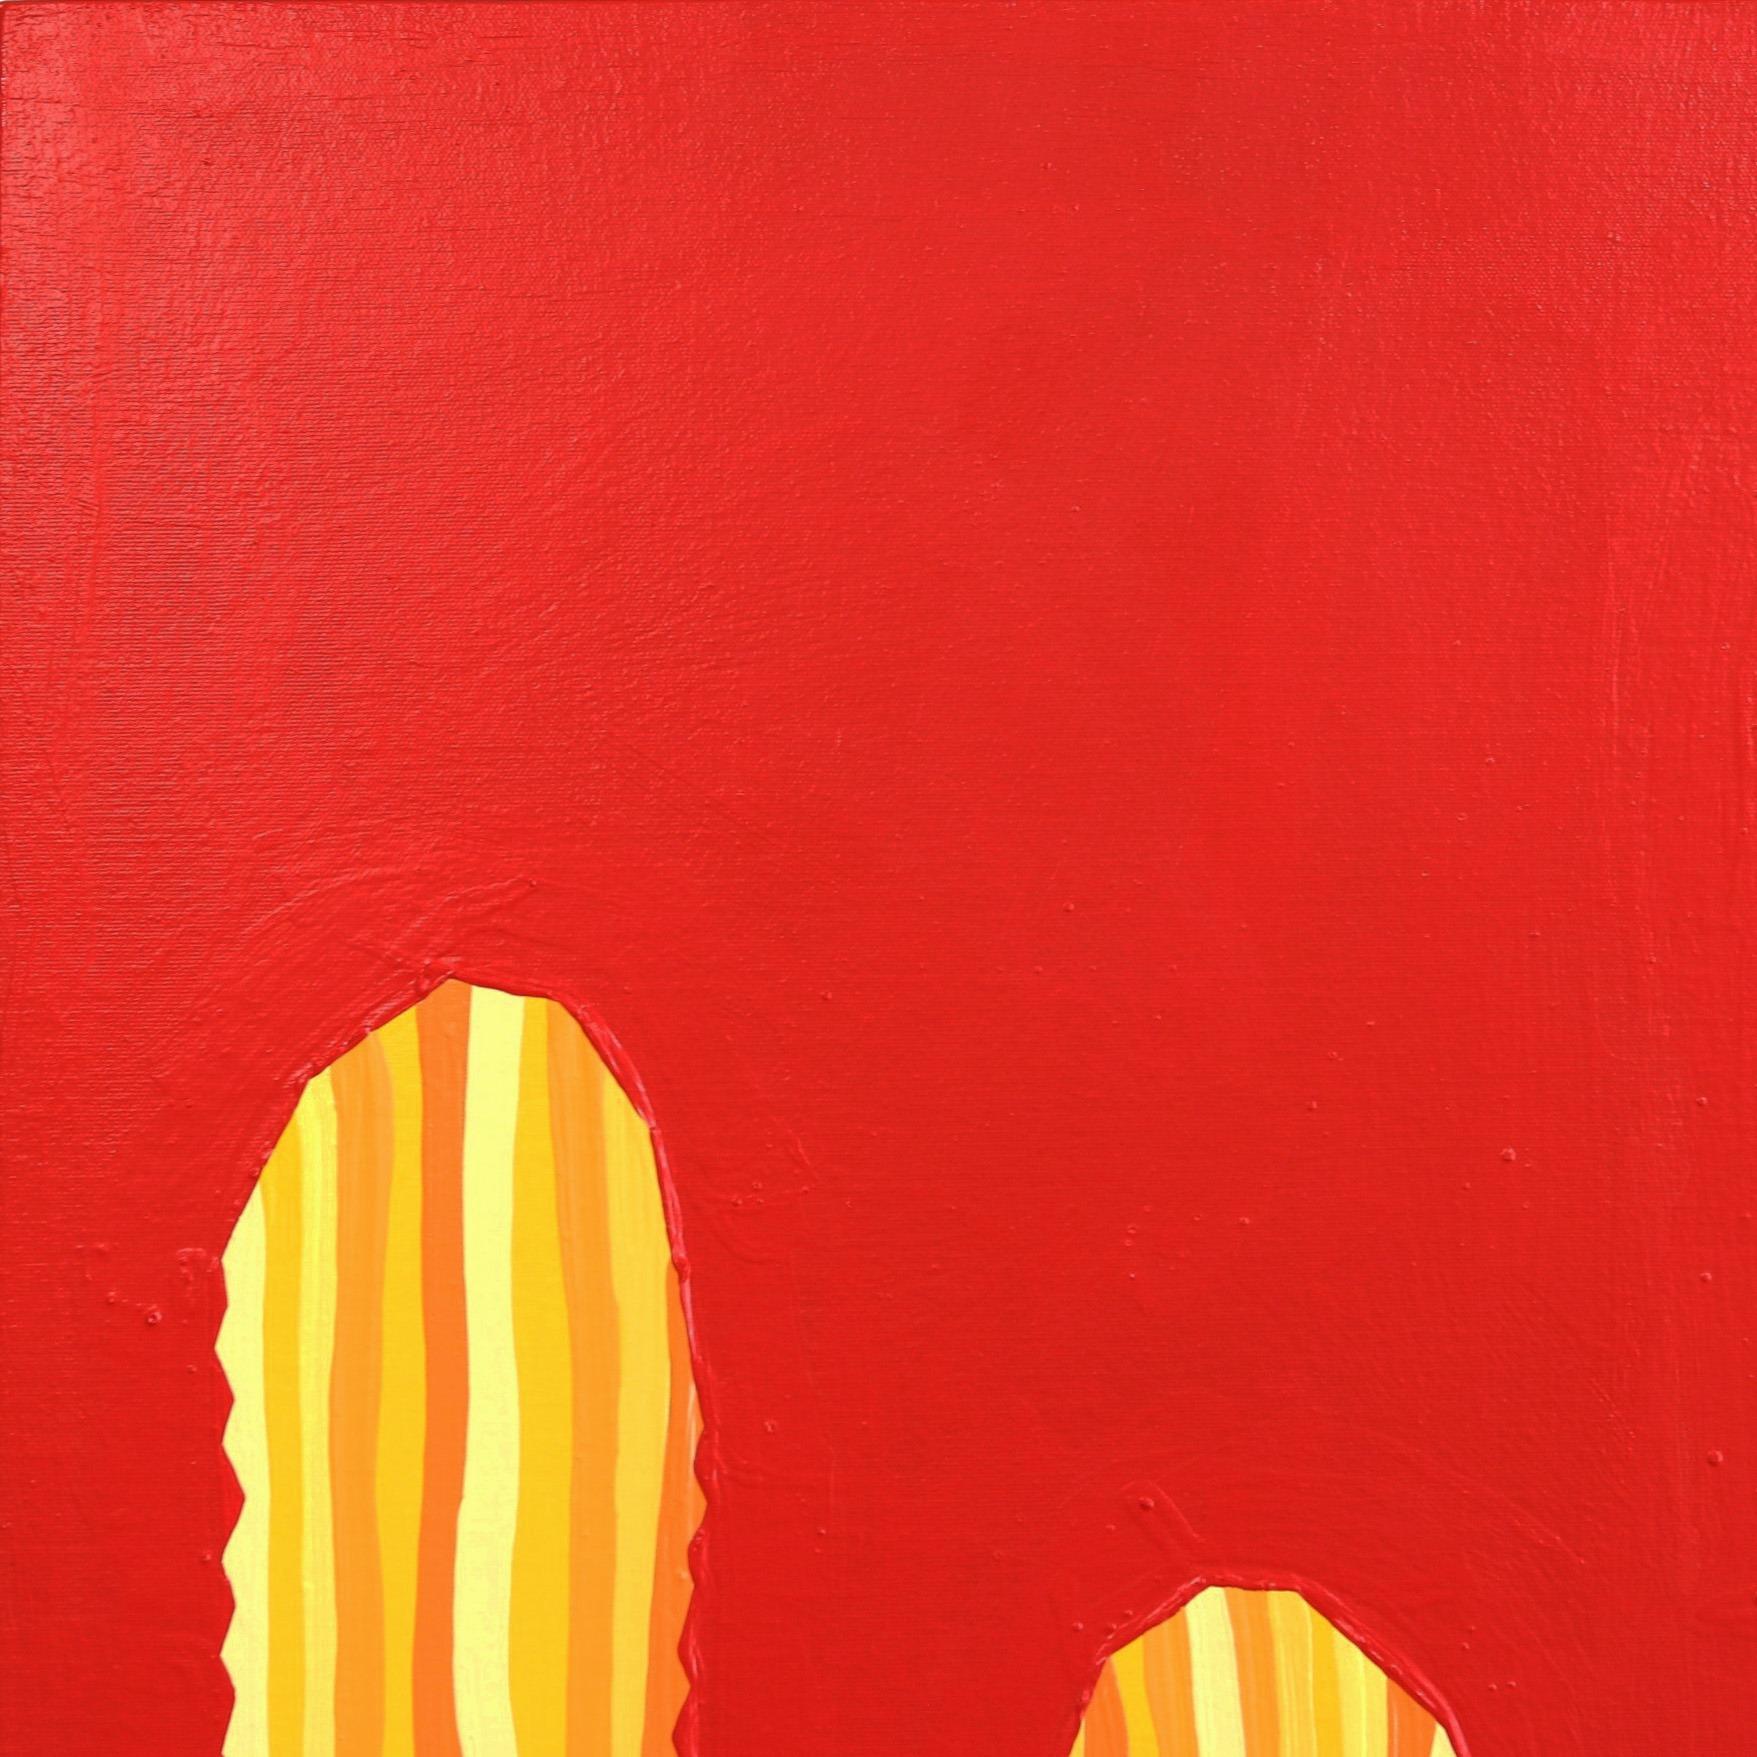 Heat Wave – lebhaftes rot-gelbes, vom Südwesten inspiriertes Pop-Art-Kactus-Gemälde (Minimalistisch), Painting, von Will Beger